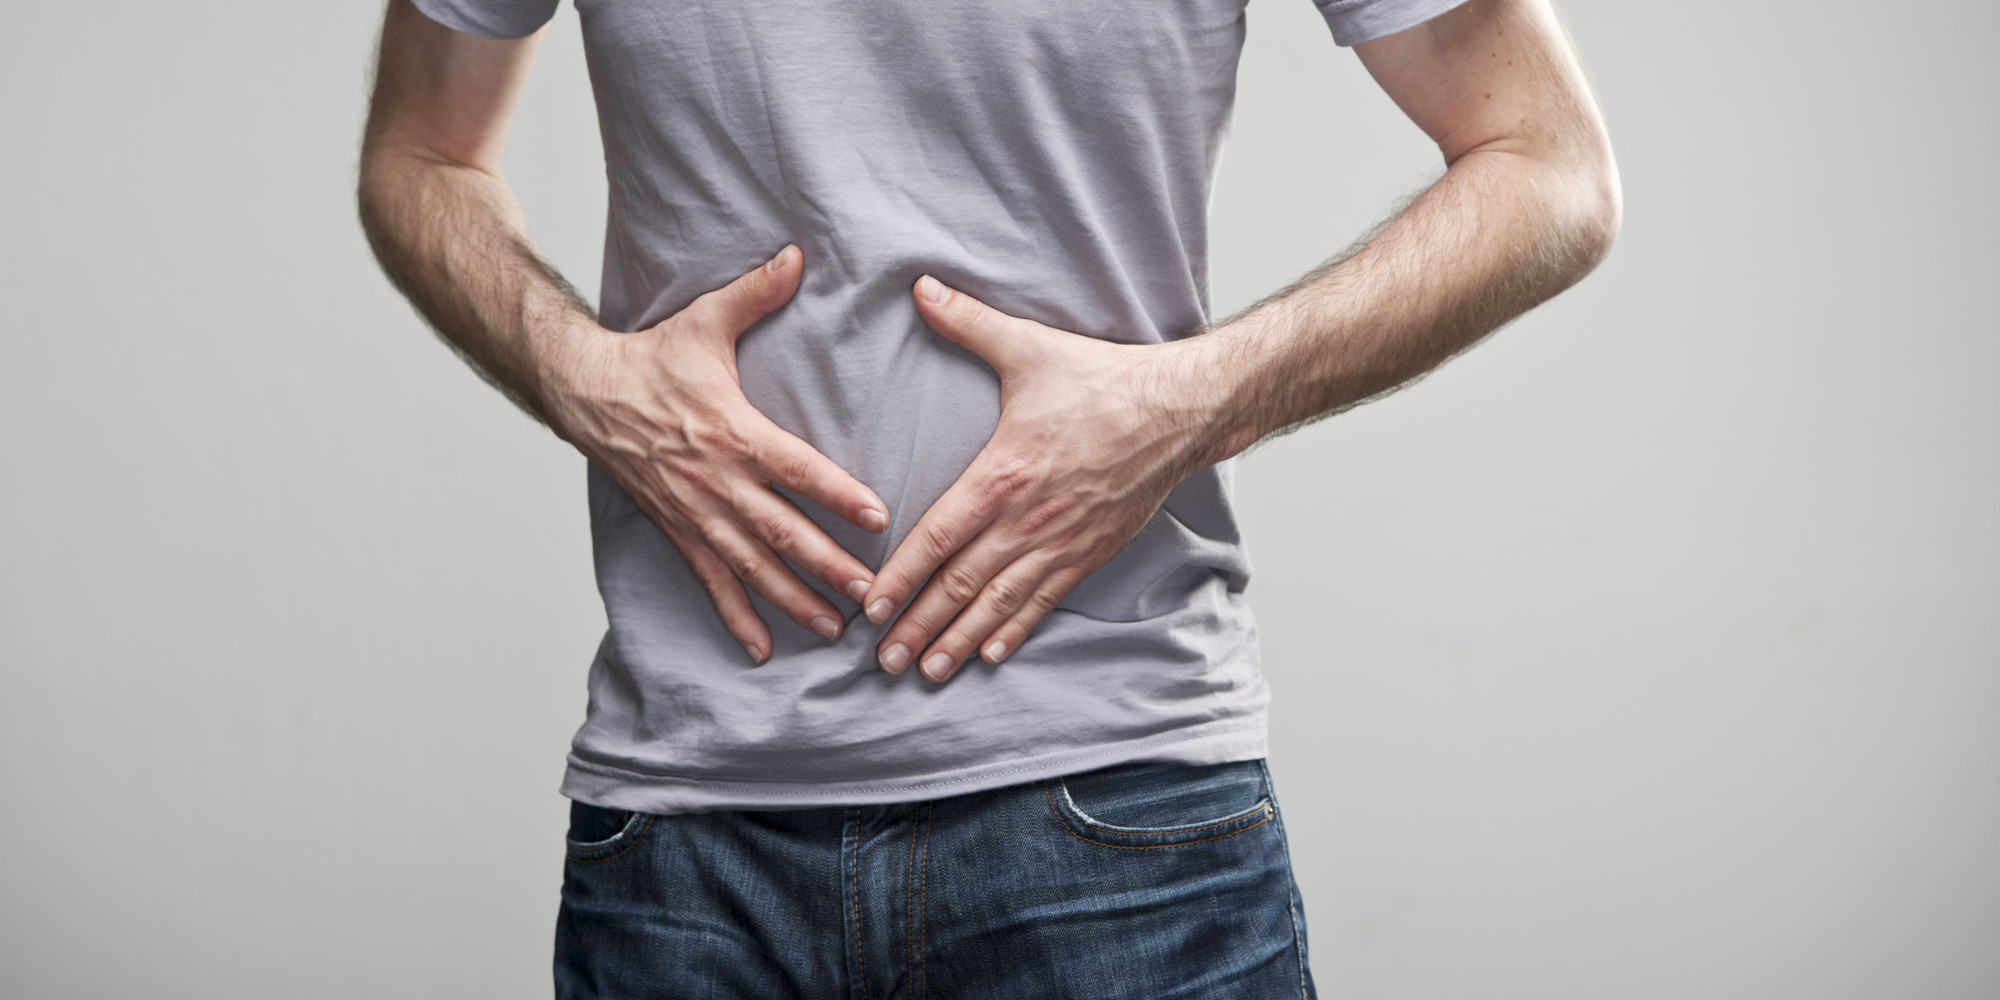 Seven Commandments for irritable bowel syndrome patients 